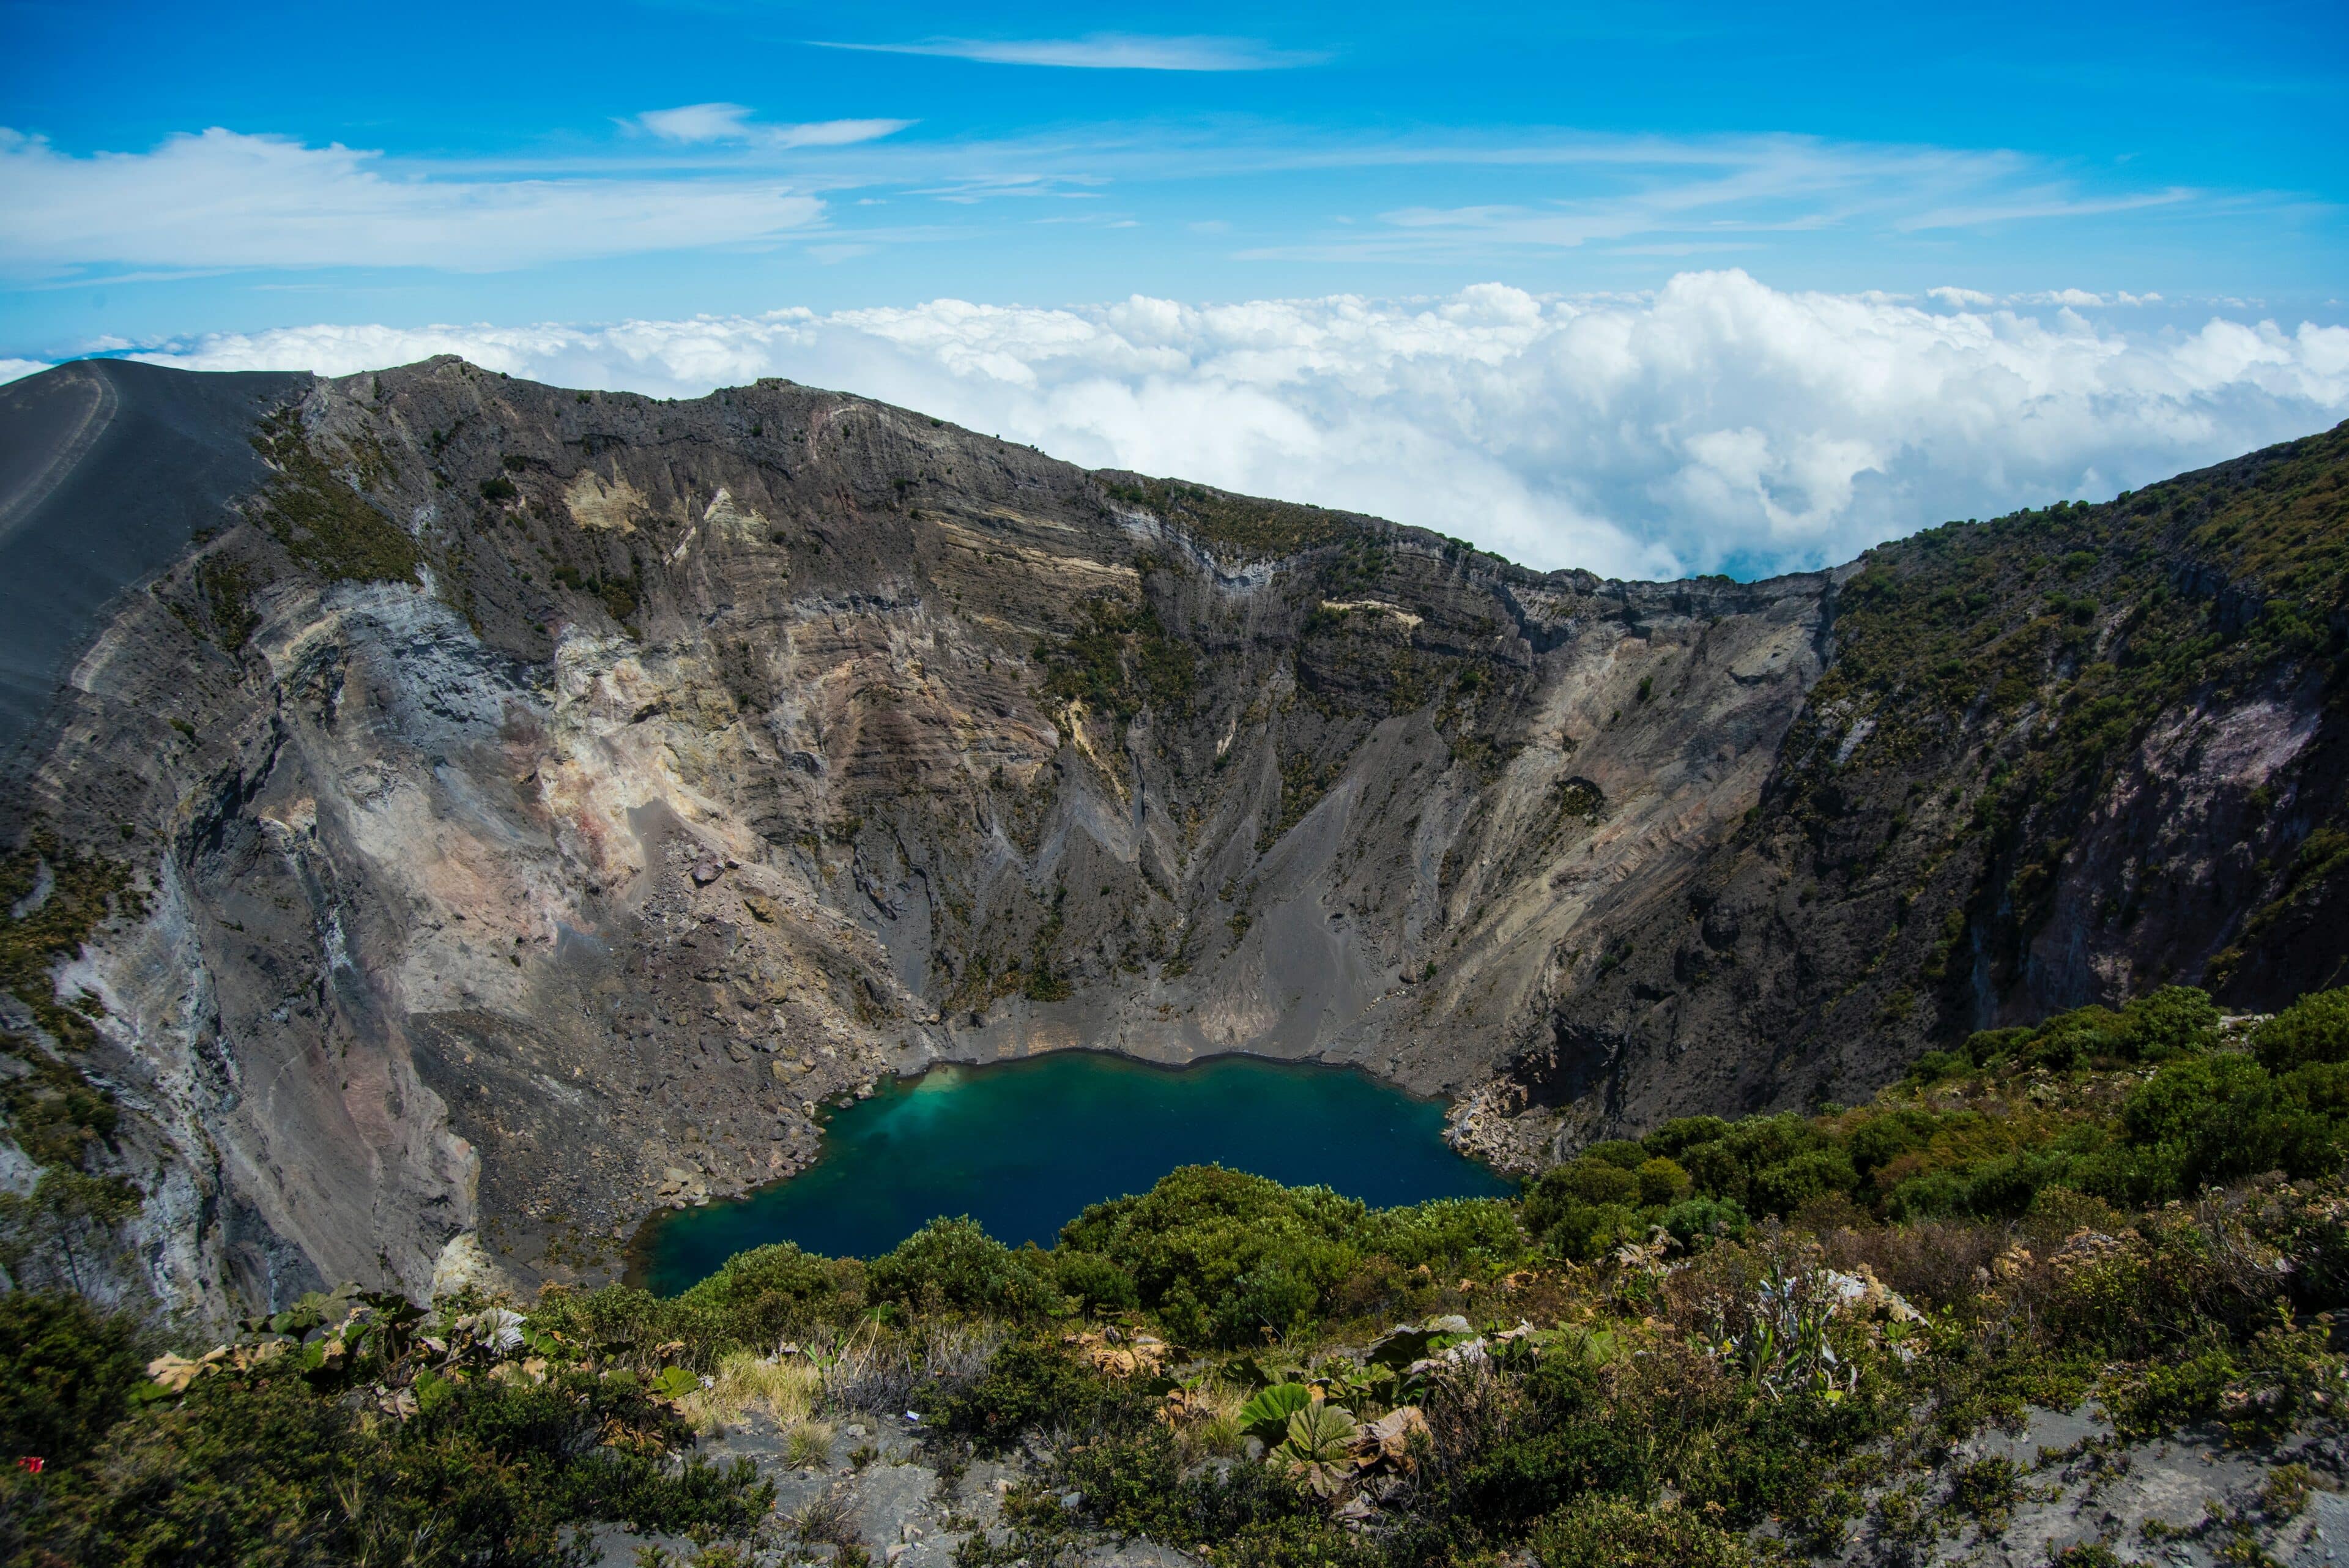 Cuánto cuesta la entrada al Volcán Irazú en Costa Rica: Volcán Irazú